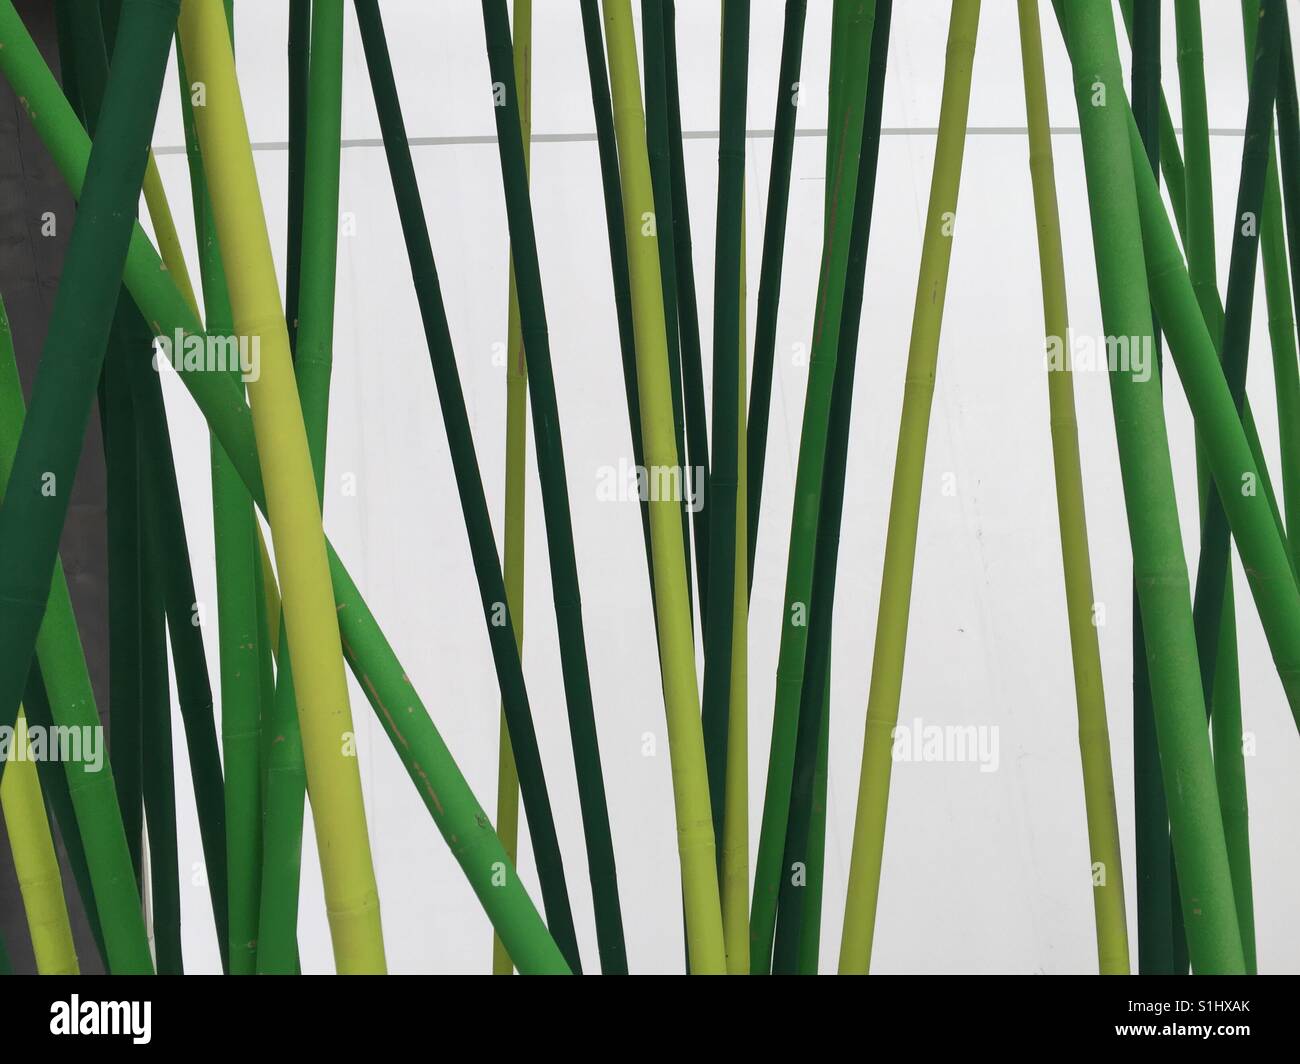 Abstraktes Bild. Grünen Sticks auf weißem Hintergrund. Grüne Stangen ein einem weissen Hintergrund. Stockfoto